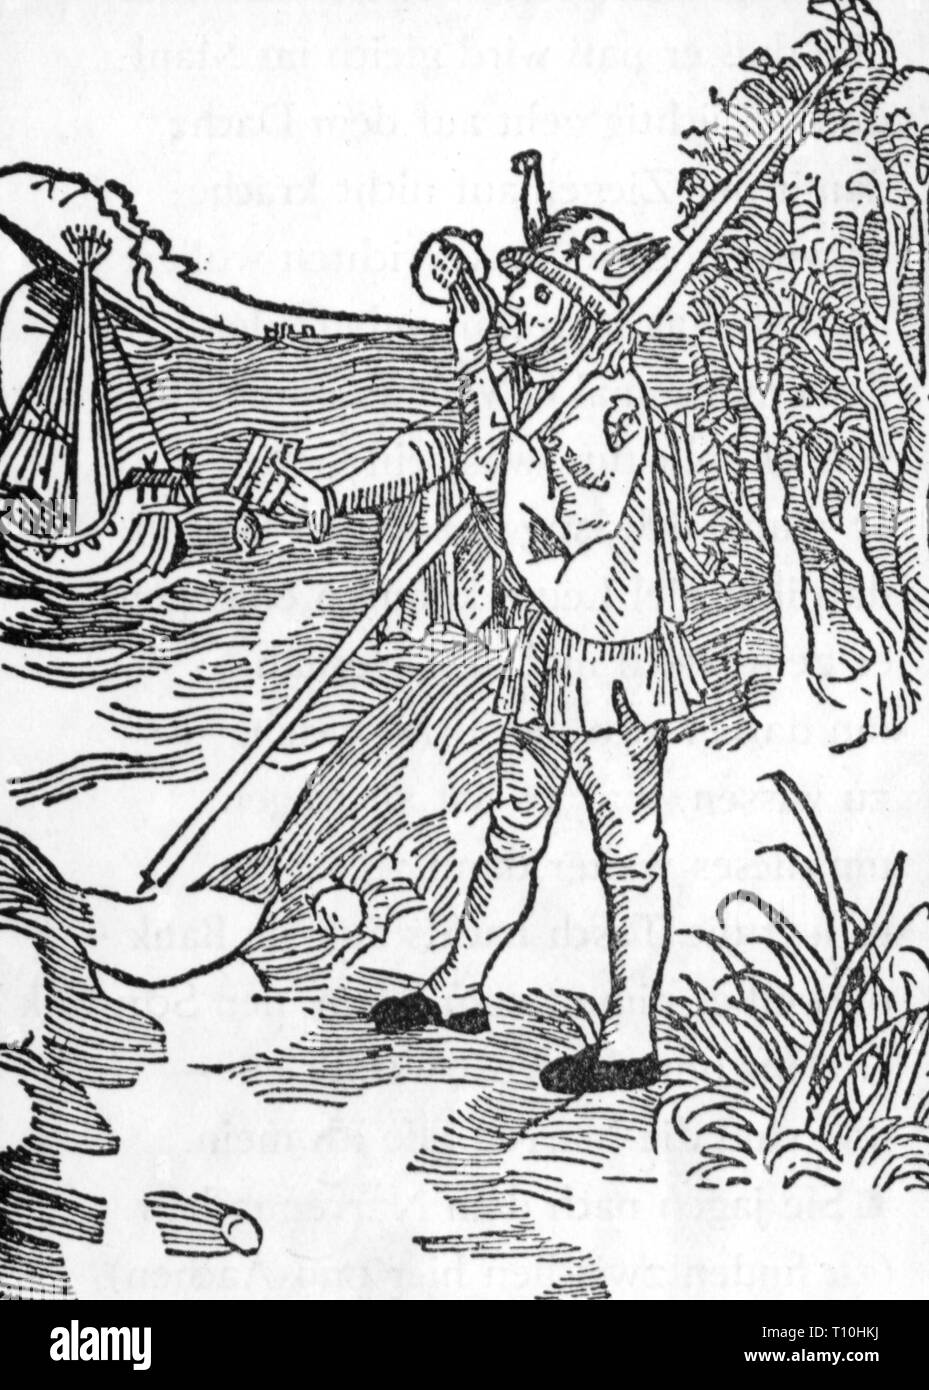 La poste, les postiers, 'fou', gravure sur bois, Sébastien Brant, 'navire de Fools', imprimé par Johann von Bergmann Olpe, Bâle, 1494, copyright de l'artiste n'a pas à être effacée Banque D'Images